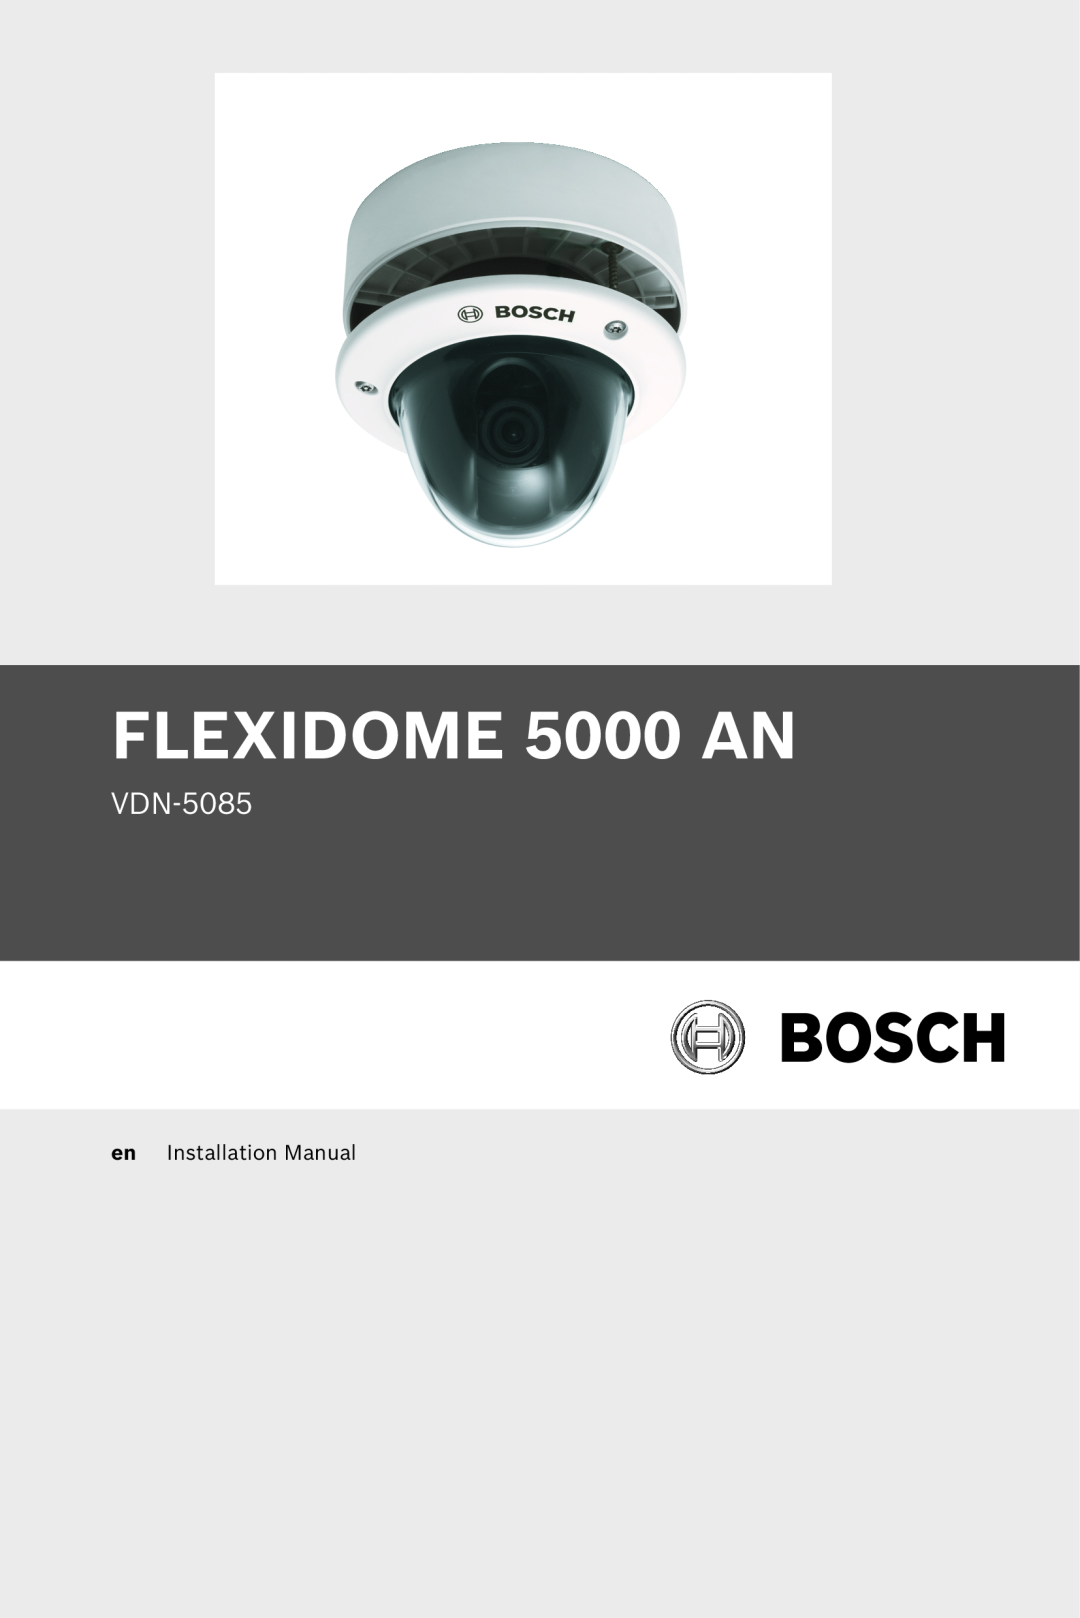 Bosch Appliances installation manual FLEXIDOME 5000 AN, VDN-5085, en Installation Manual 